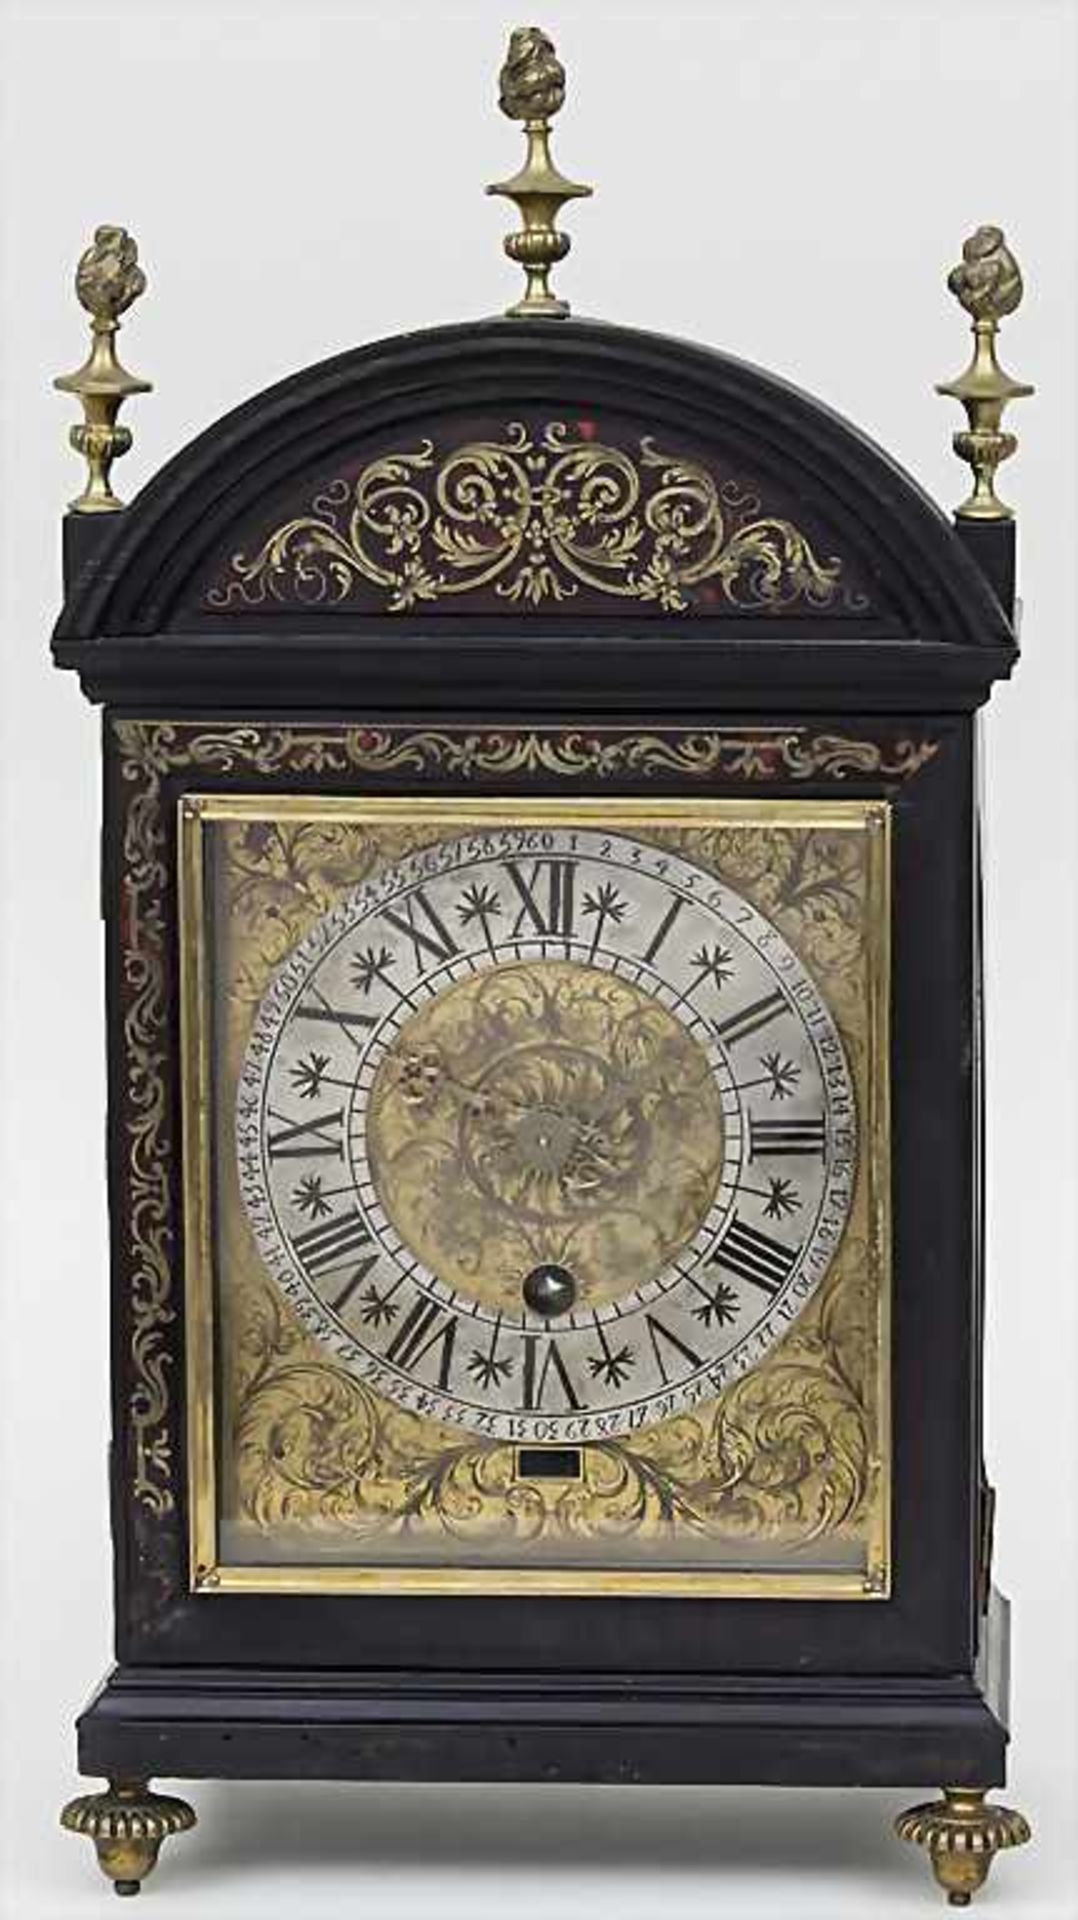 Boulle-Uhr / A clock, Nicolas Gribelin 1637-1719, ParisGehäuse: Holz mit Bronzeapplikationen sowie